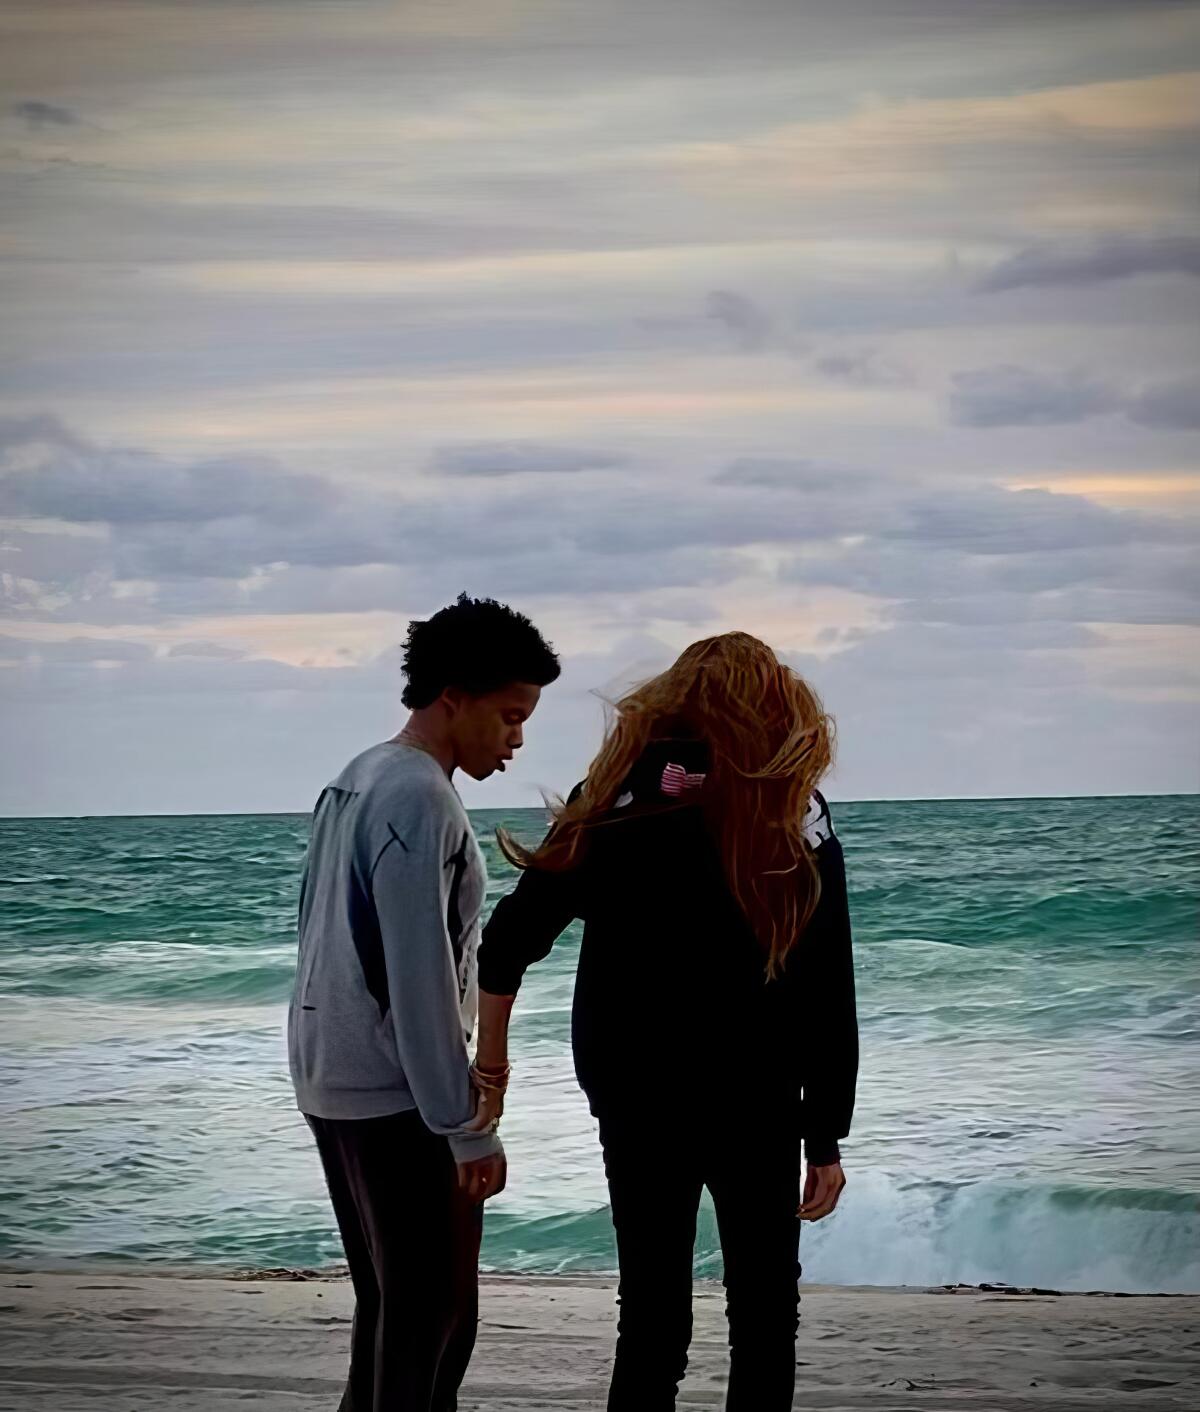 Zwei Menschen gehen am Strand spazieren und schauen auf die Wellen des Ozeans.